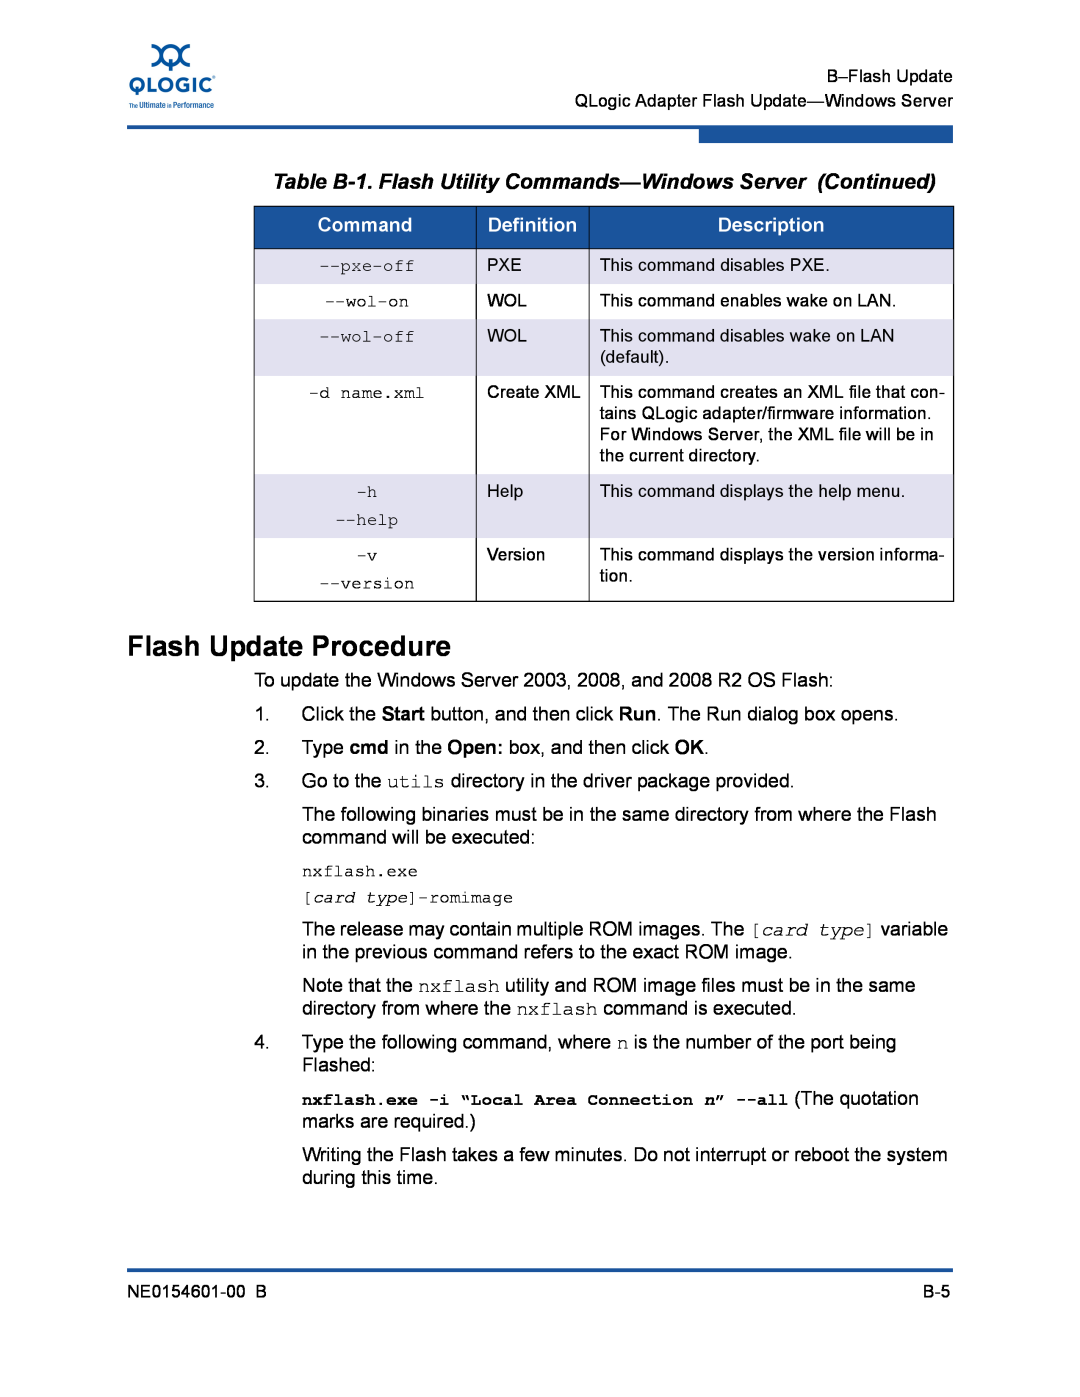 Q-Logic 3000 Flash Update Procedure, Table B-1. Flash Utility Commands-Windows Server Continued, Definition, Description 